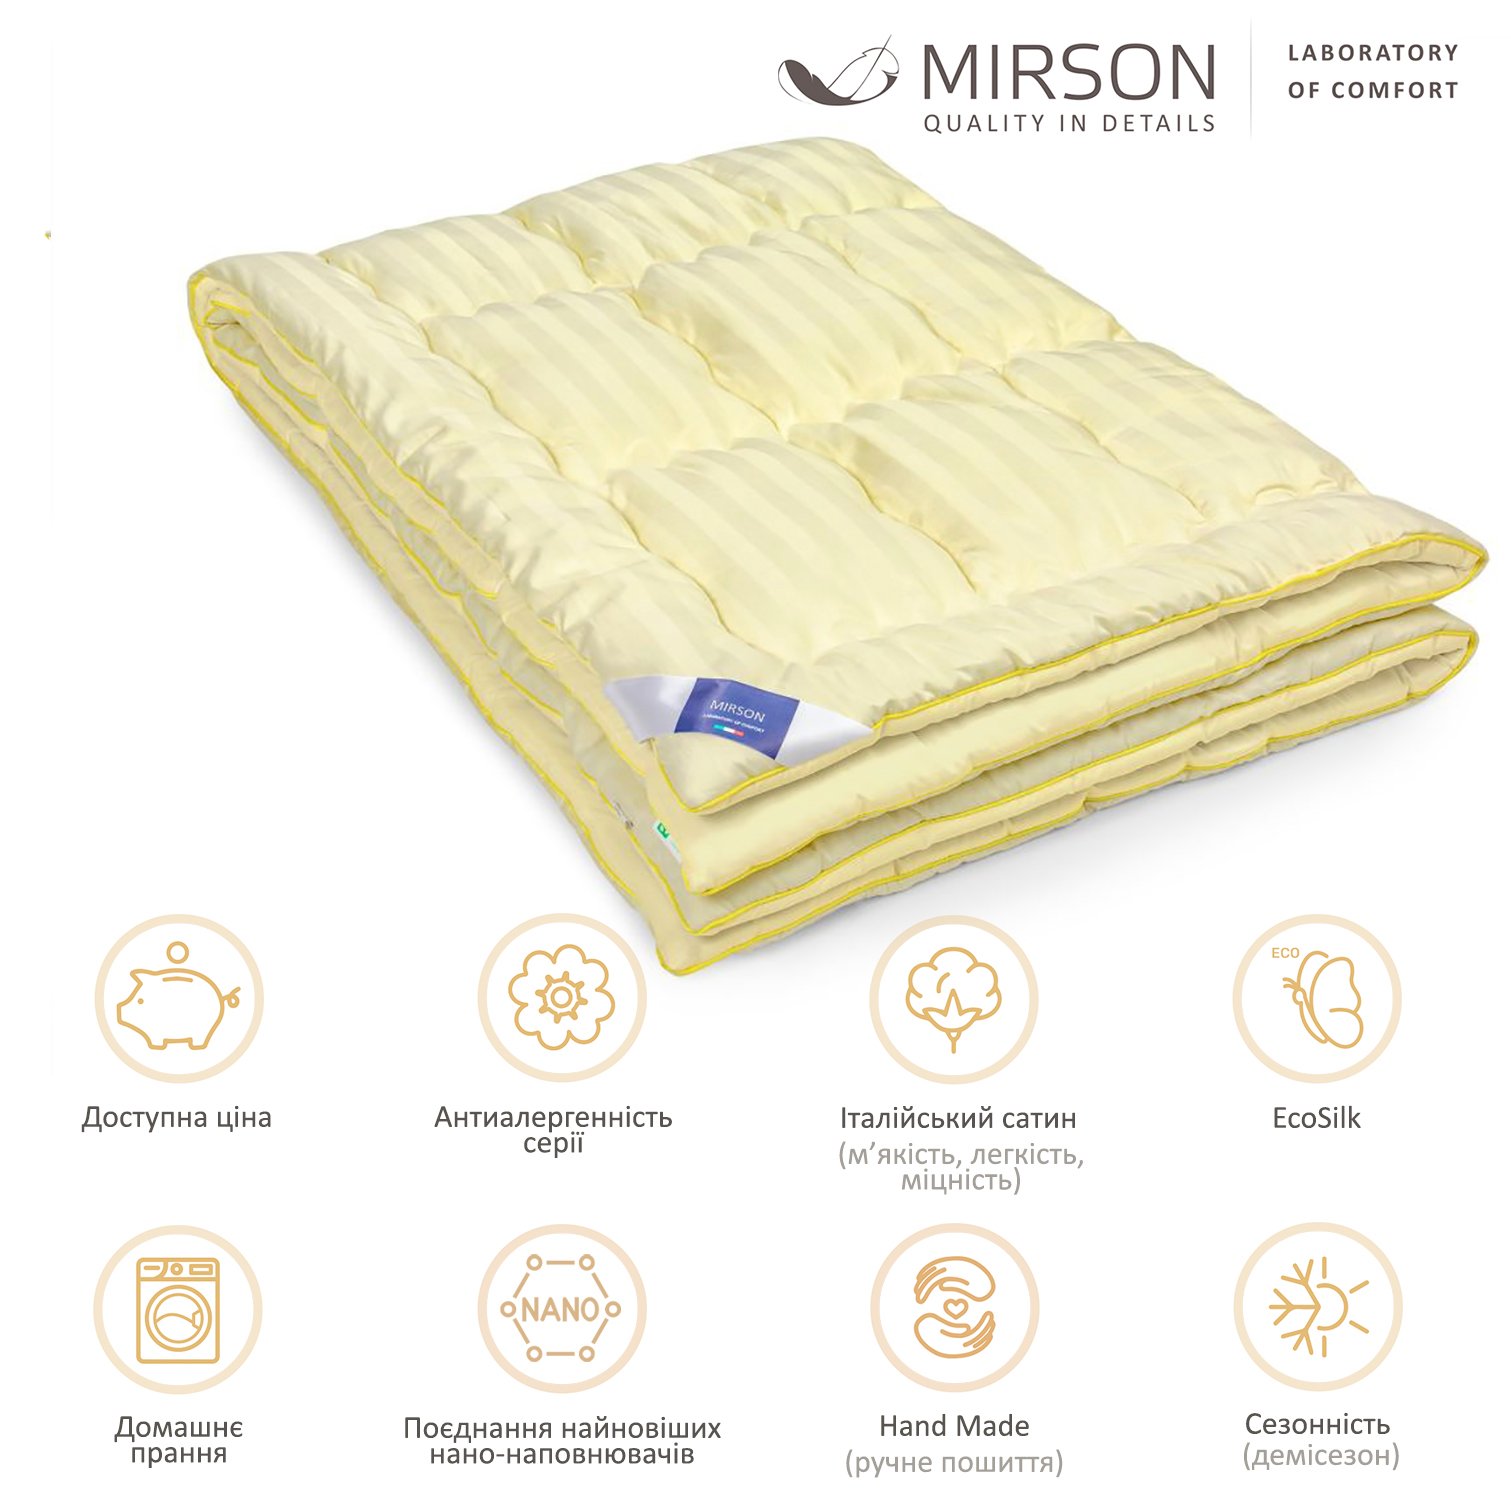 Одеяло антиаллергенное MirSon Carmela Hand Made EcoSilk №065, демисезонное, 110x140 см, светло-желтое - фото 4